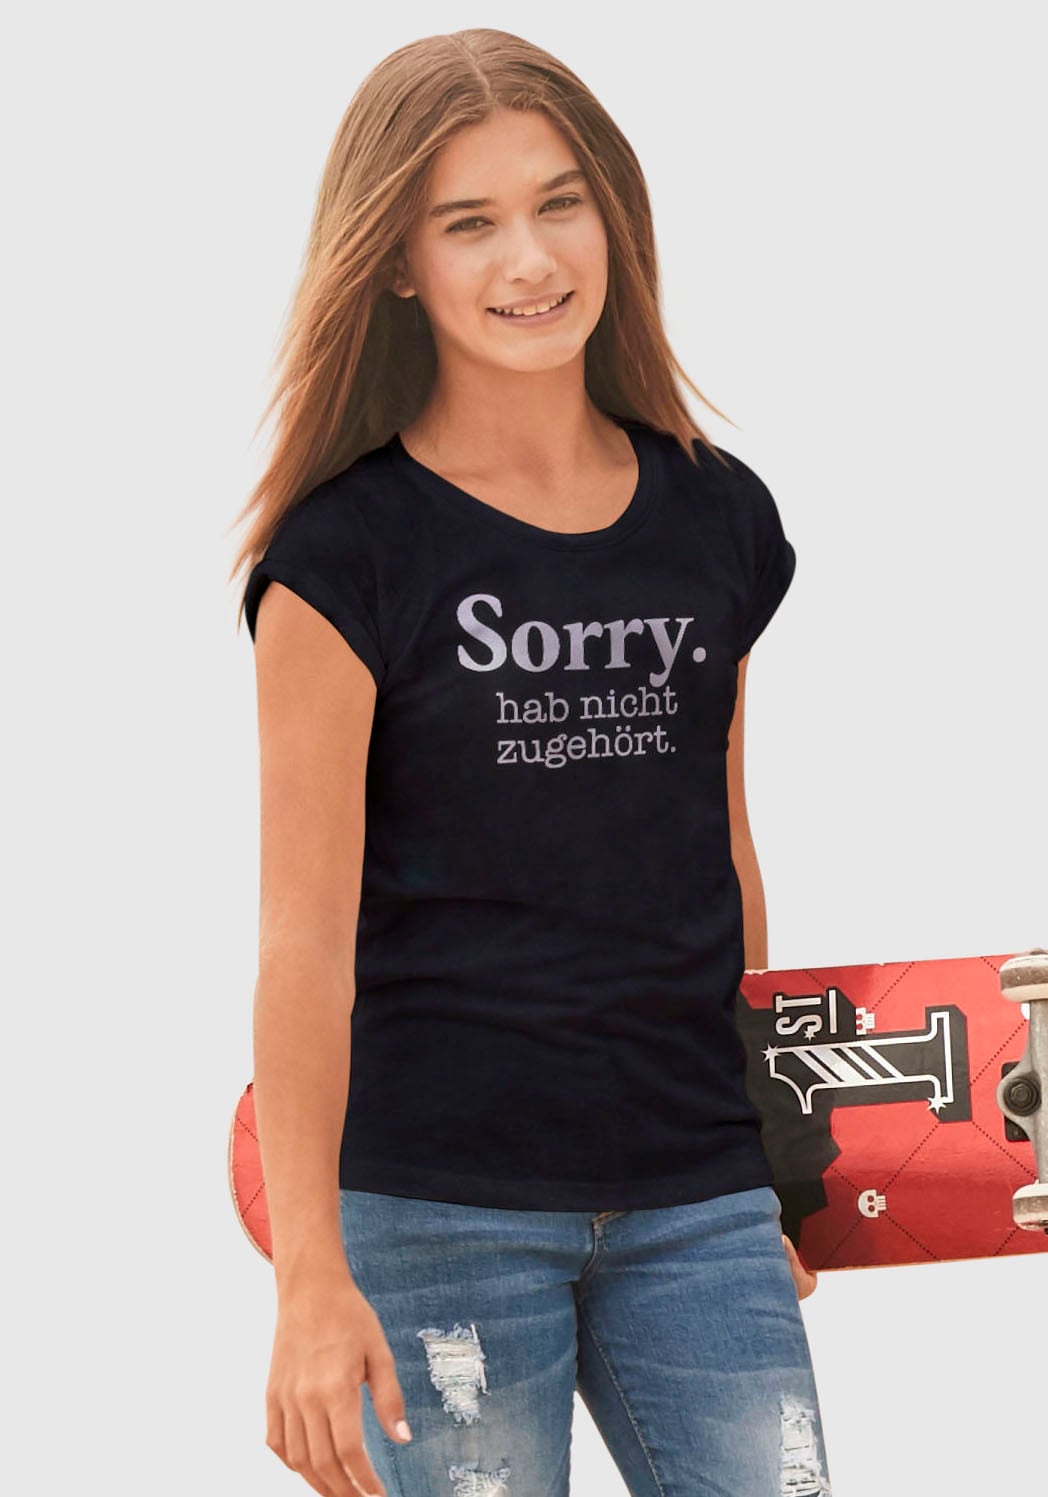 in »Sorry. ♕ KIDSWORLD legerer Form weiter zugehört.«, hab bei T-Shirt nicht